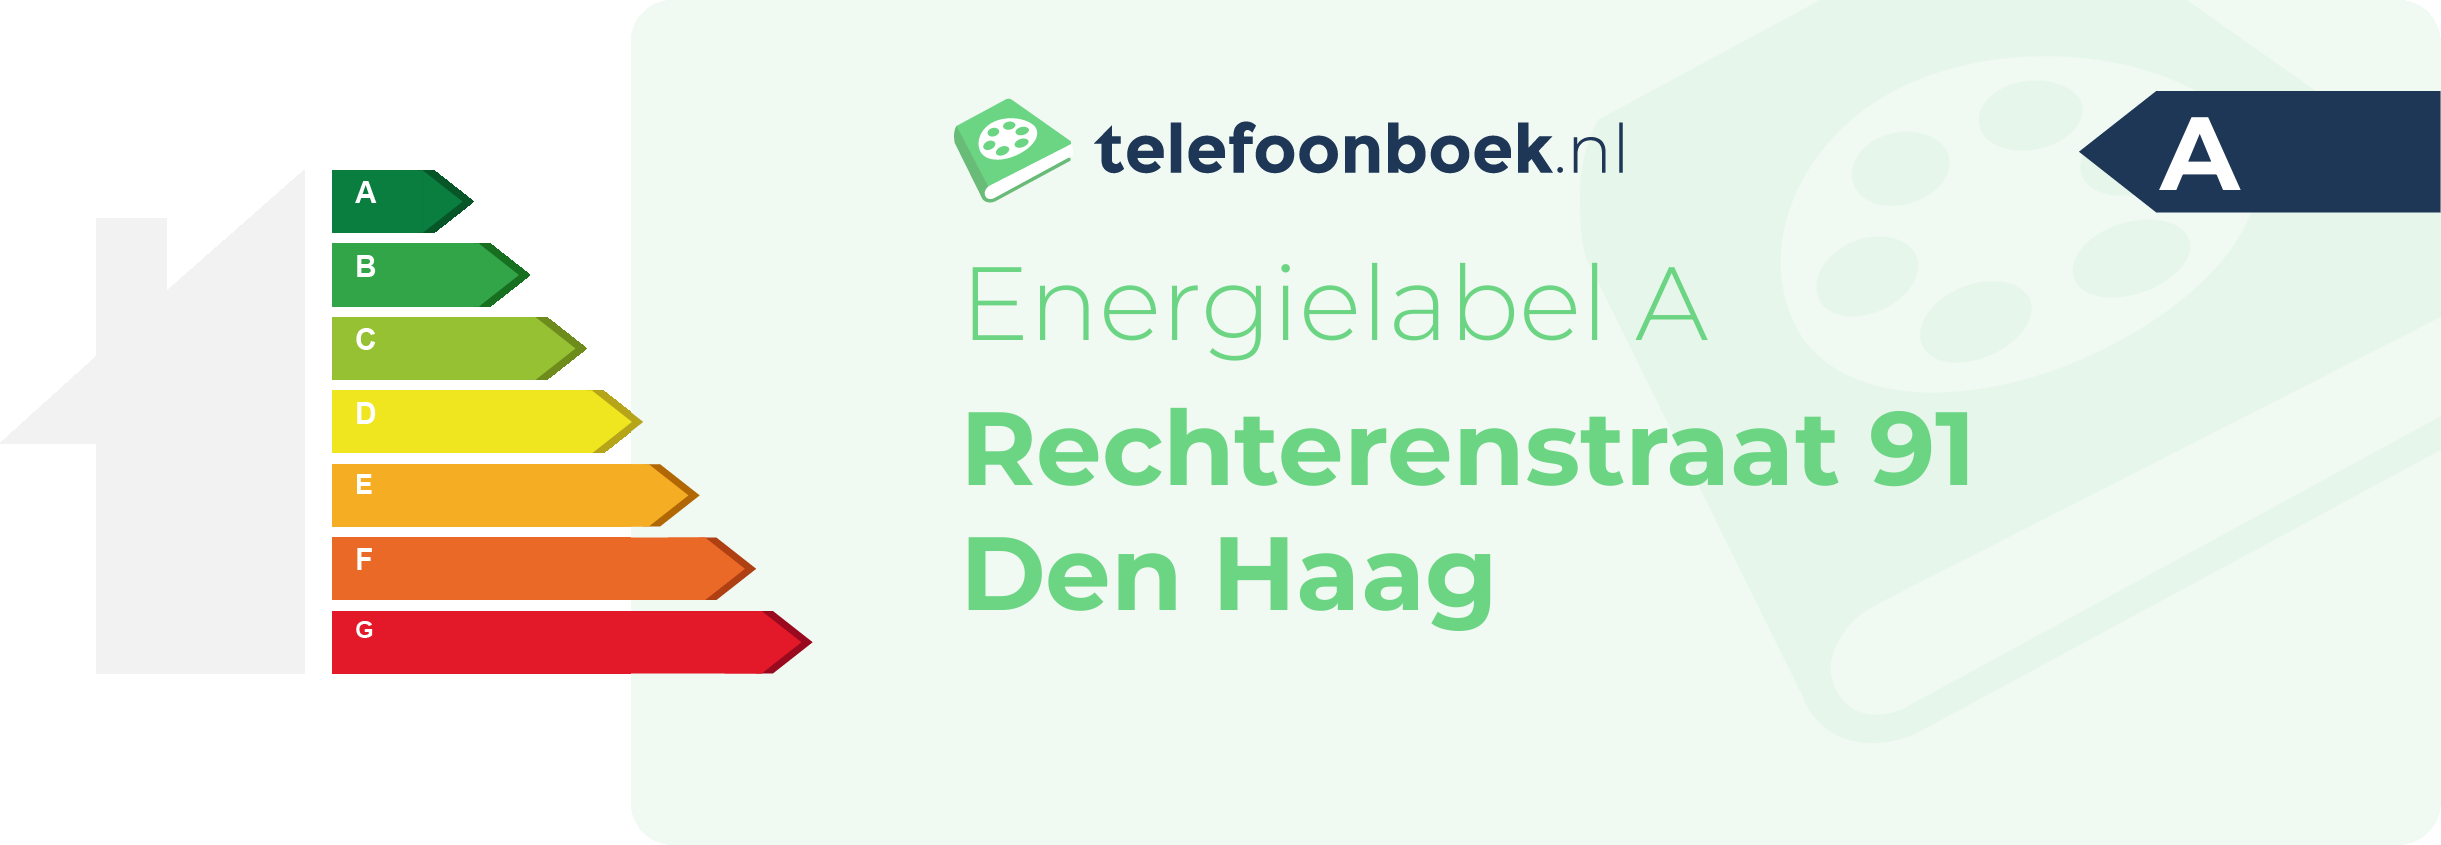 Energielabel Rechterenstraat 91 Den Haag